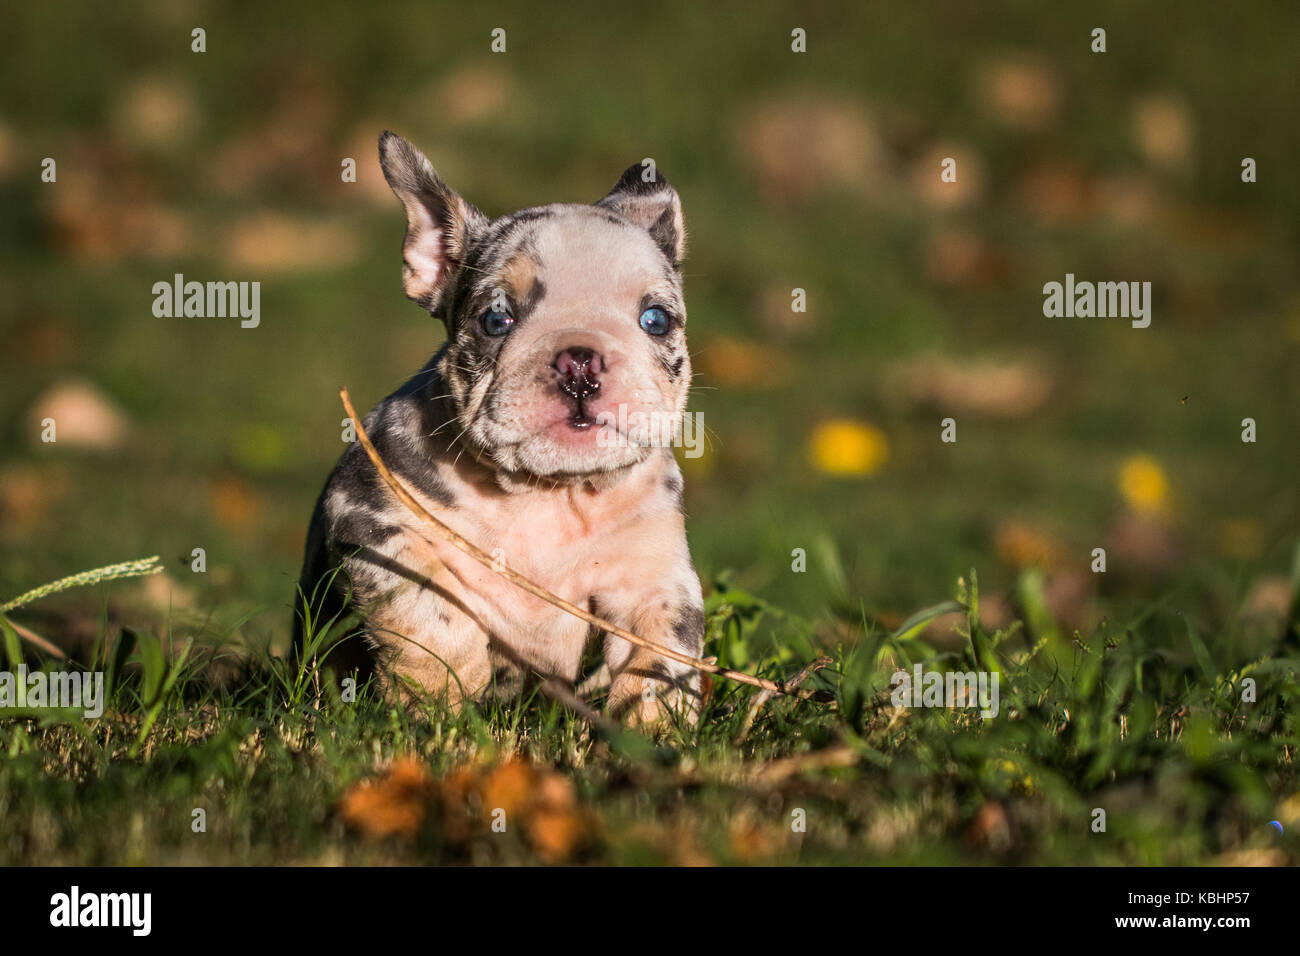 Horizontale Foto eines Merle farbiges Englische Bulldogge Welpe mit strahlend blauen Augen, die in der grüne Gras auf die Kamera Stockfoto